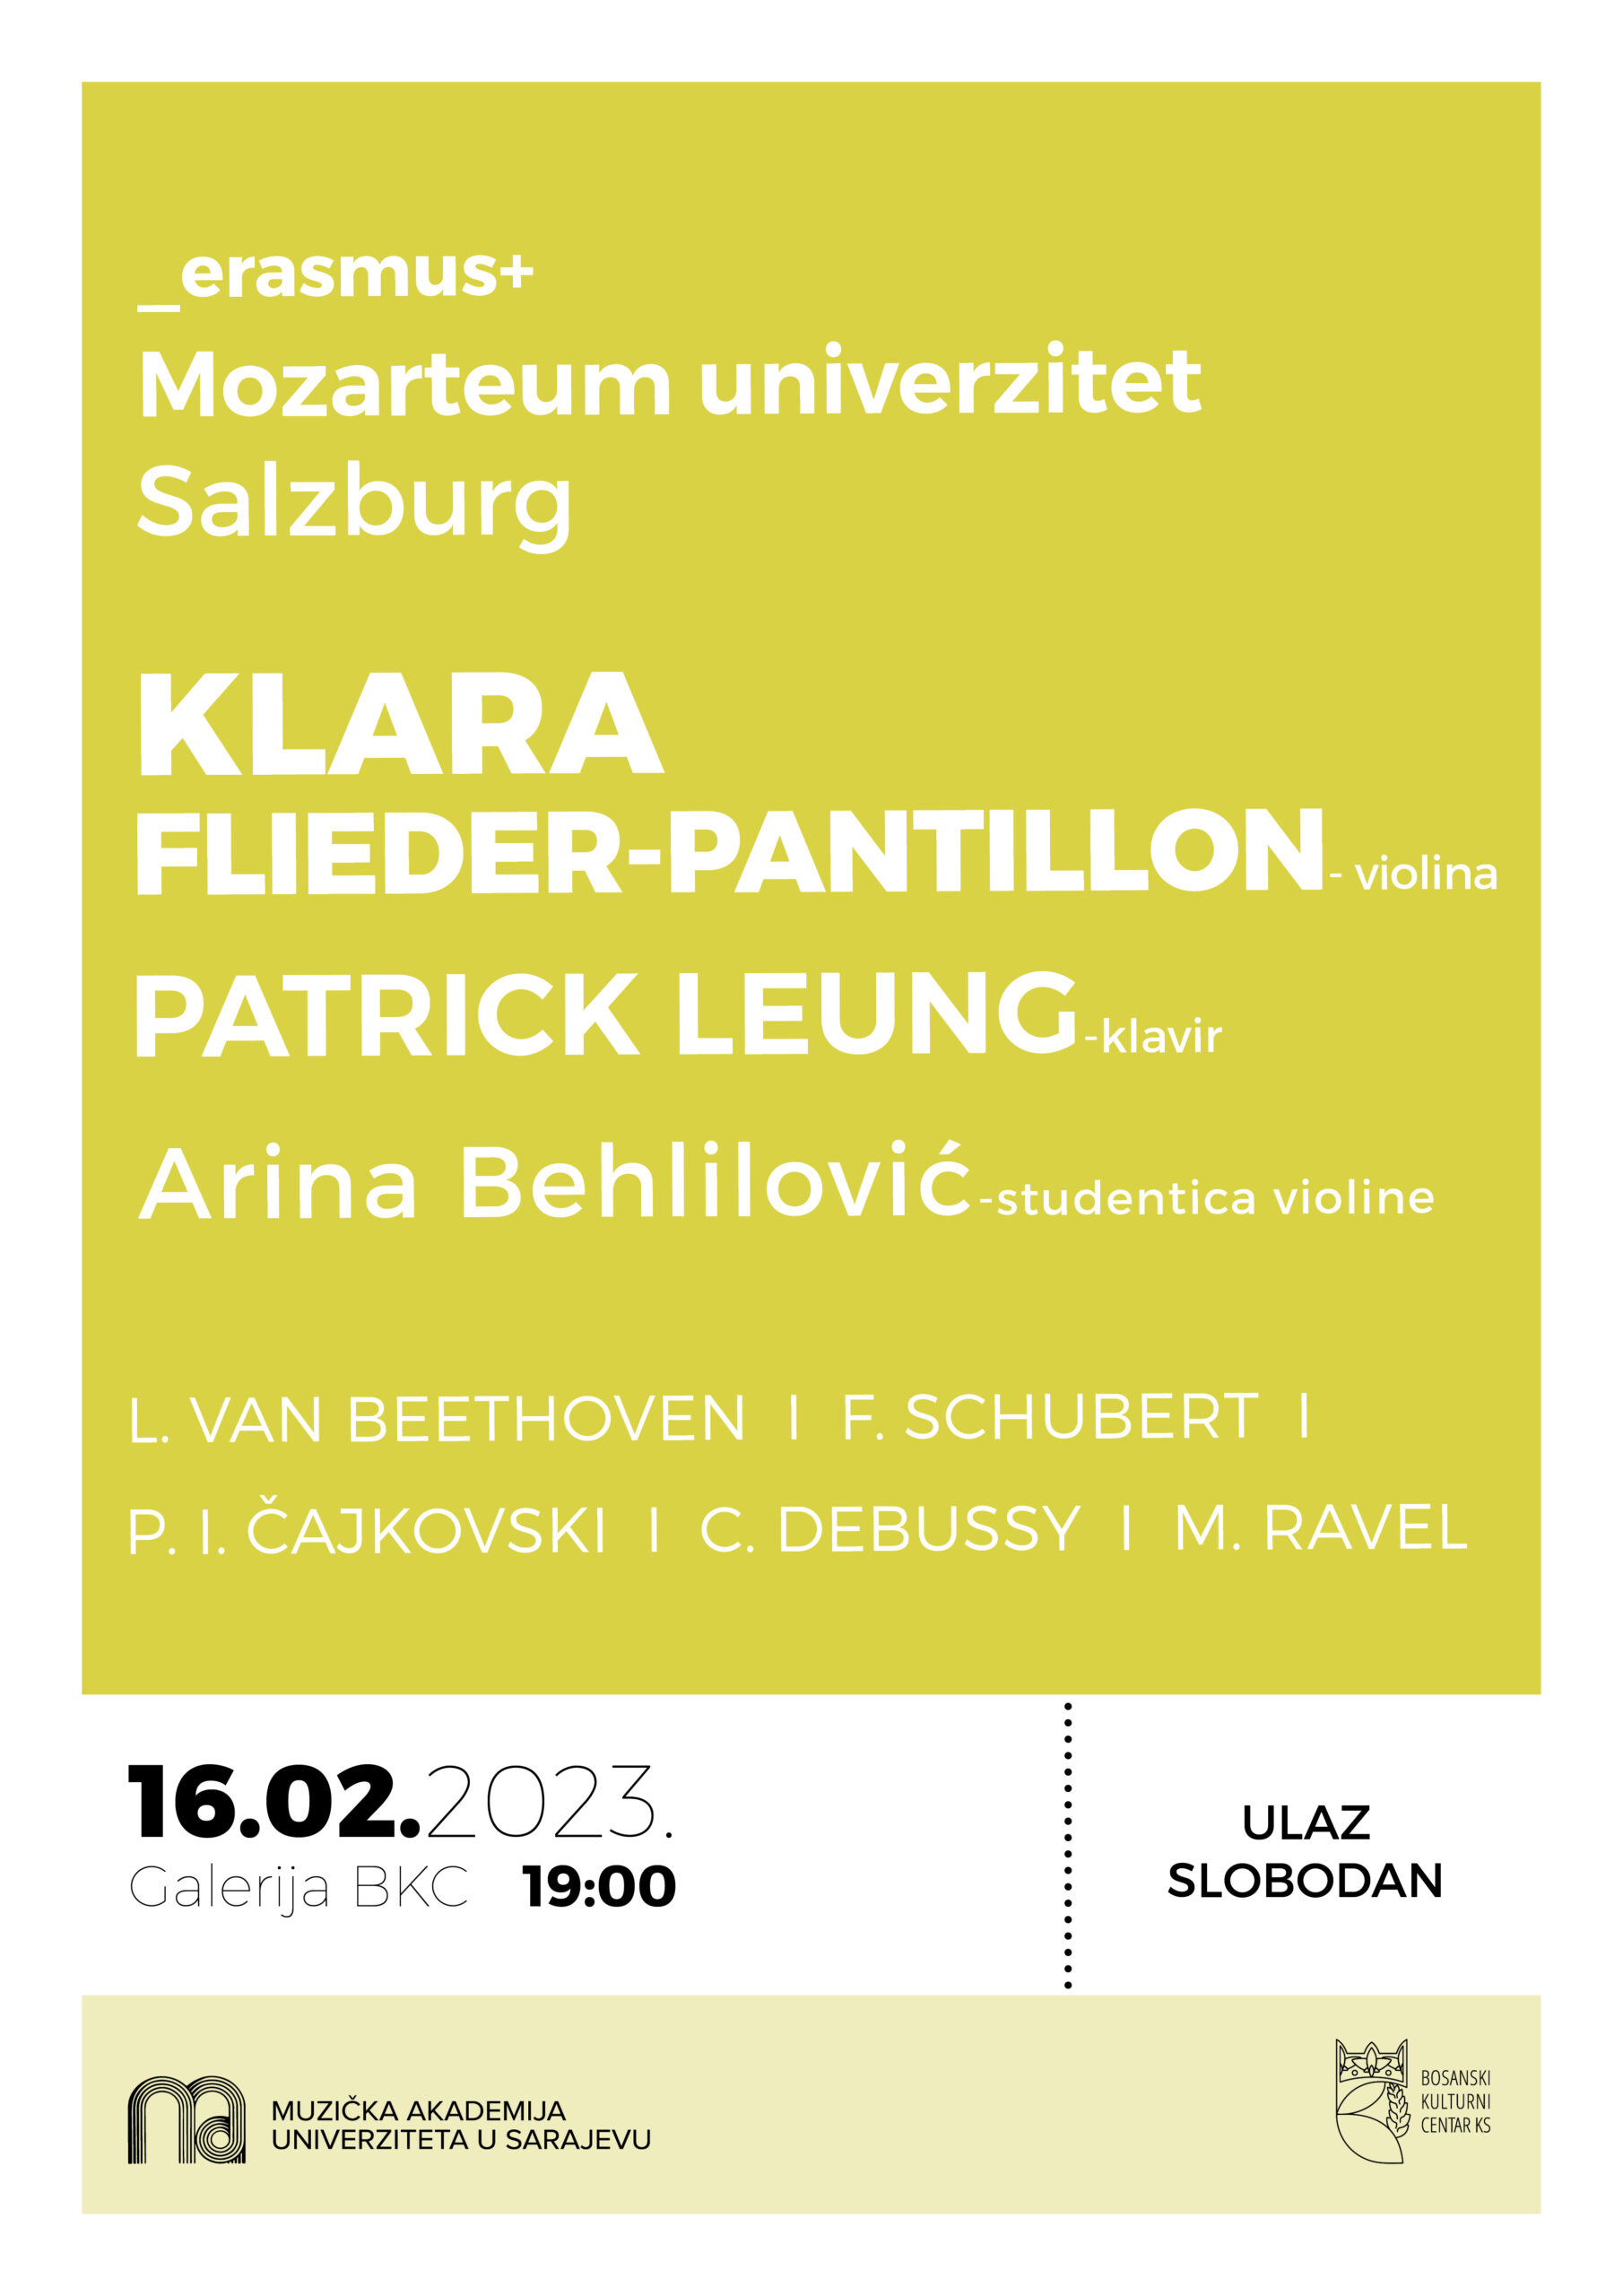 Koncert: Klara Flieder-Pantillon, violina, Patrick Leung, klavir, Arina Behlilović, studentica violine